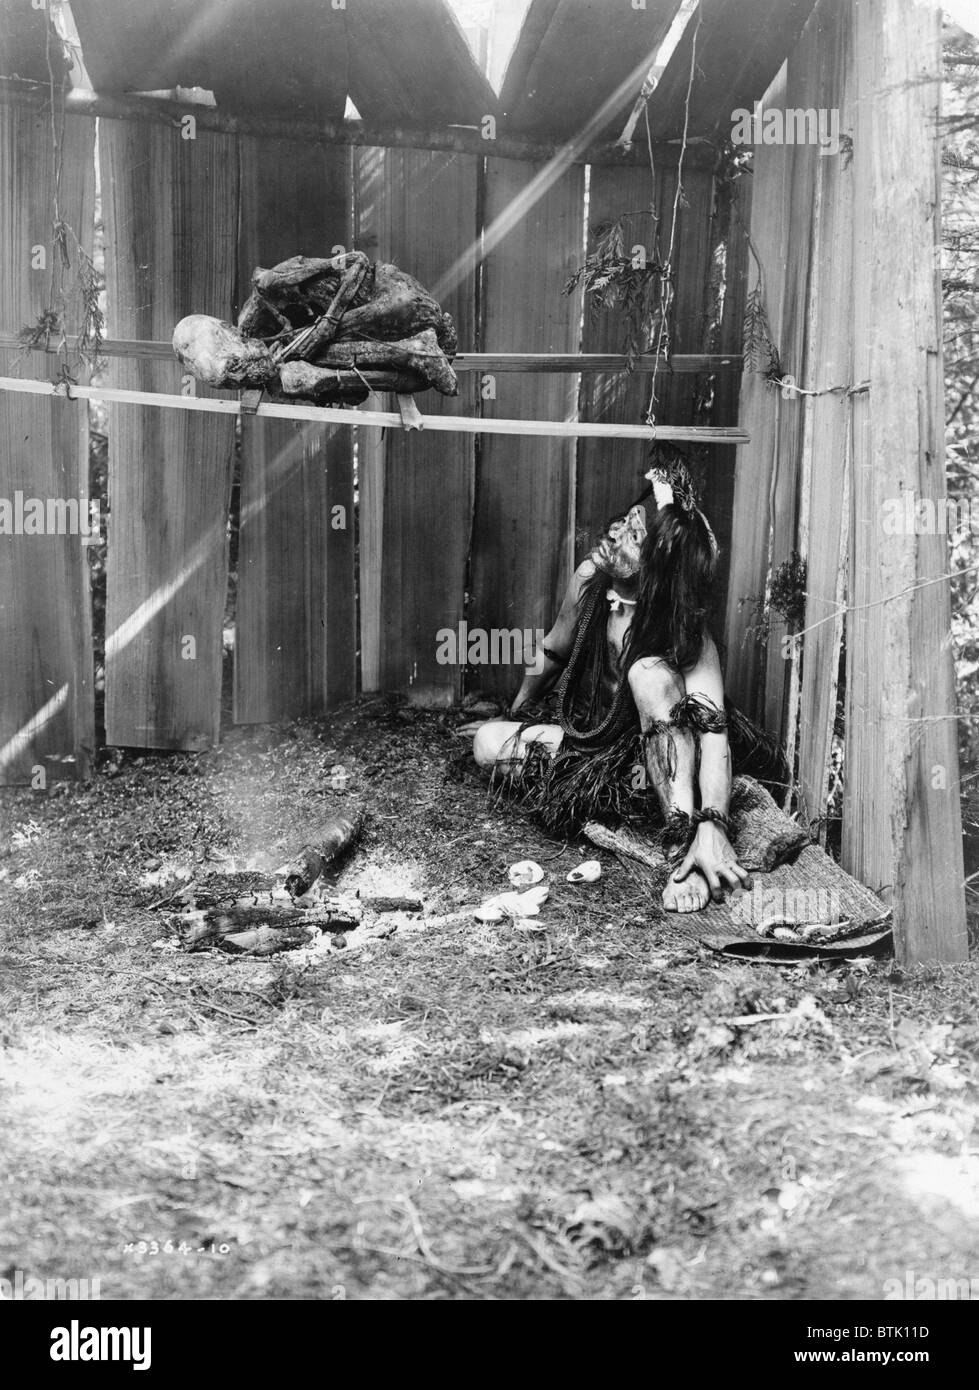 Die Trocknung Mumie, Kwakiutl Mann im inneren Struktur, Härtung Mumie über Rauch und Kohlen, Foto von Curtis, 1910. Stockfoto